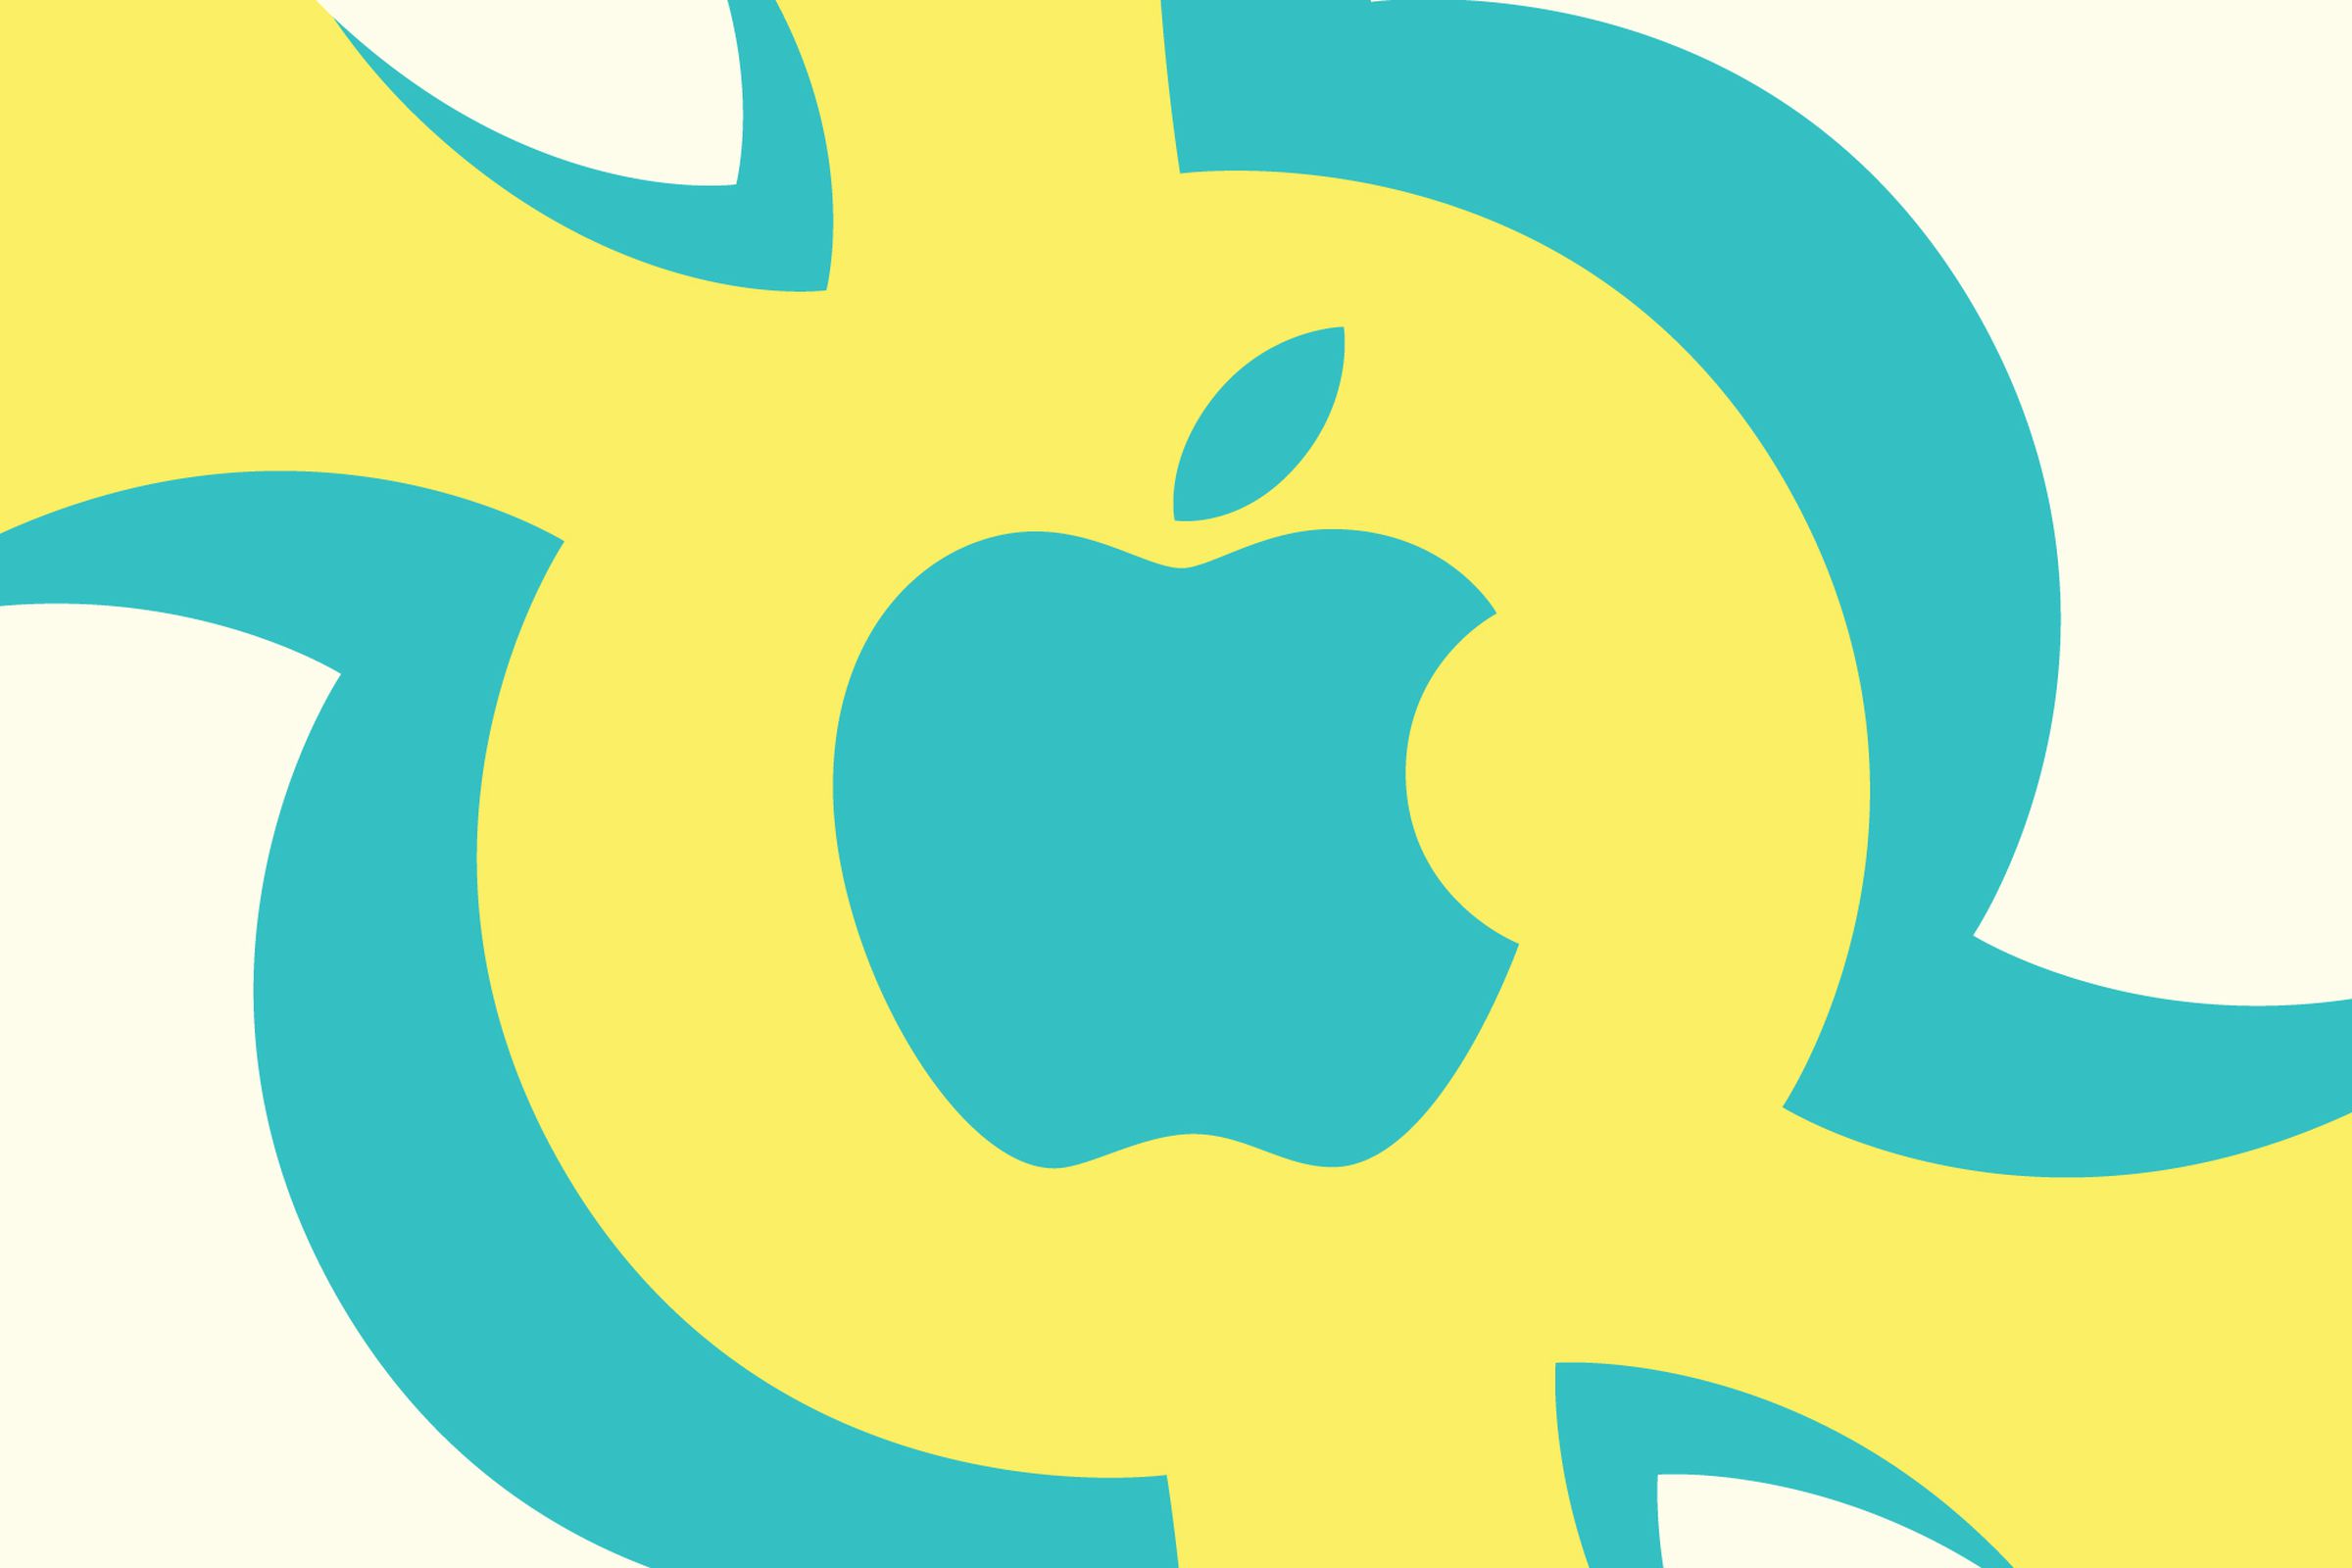 Ilustrasi logo Apple pada latar kuning dan tosca